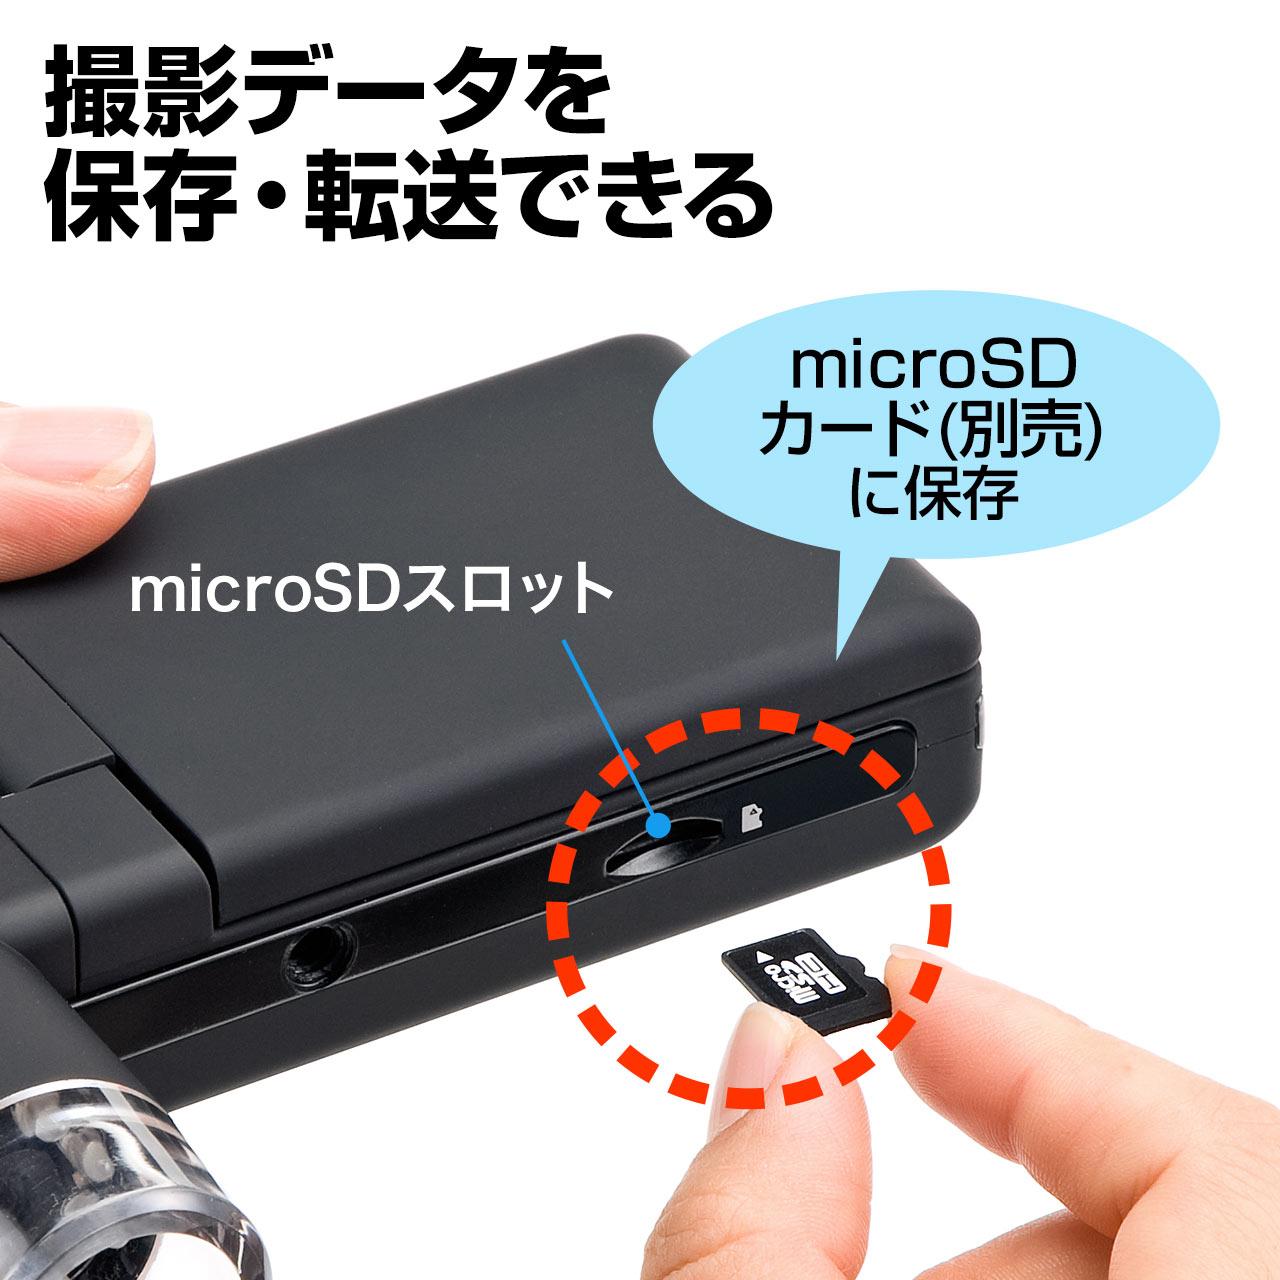 【ビジネス応援セール】デジタル顕微鏡 マイクロスコープ 最大300倍 モニター付 500万画素 スタンド付 microSD保存 400-CAM025